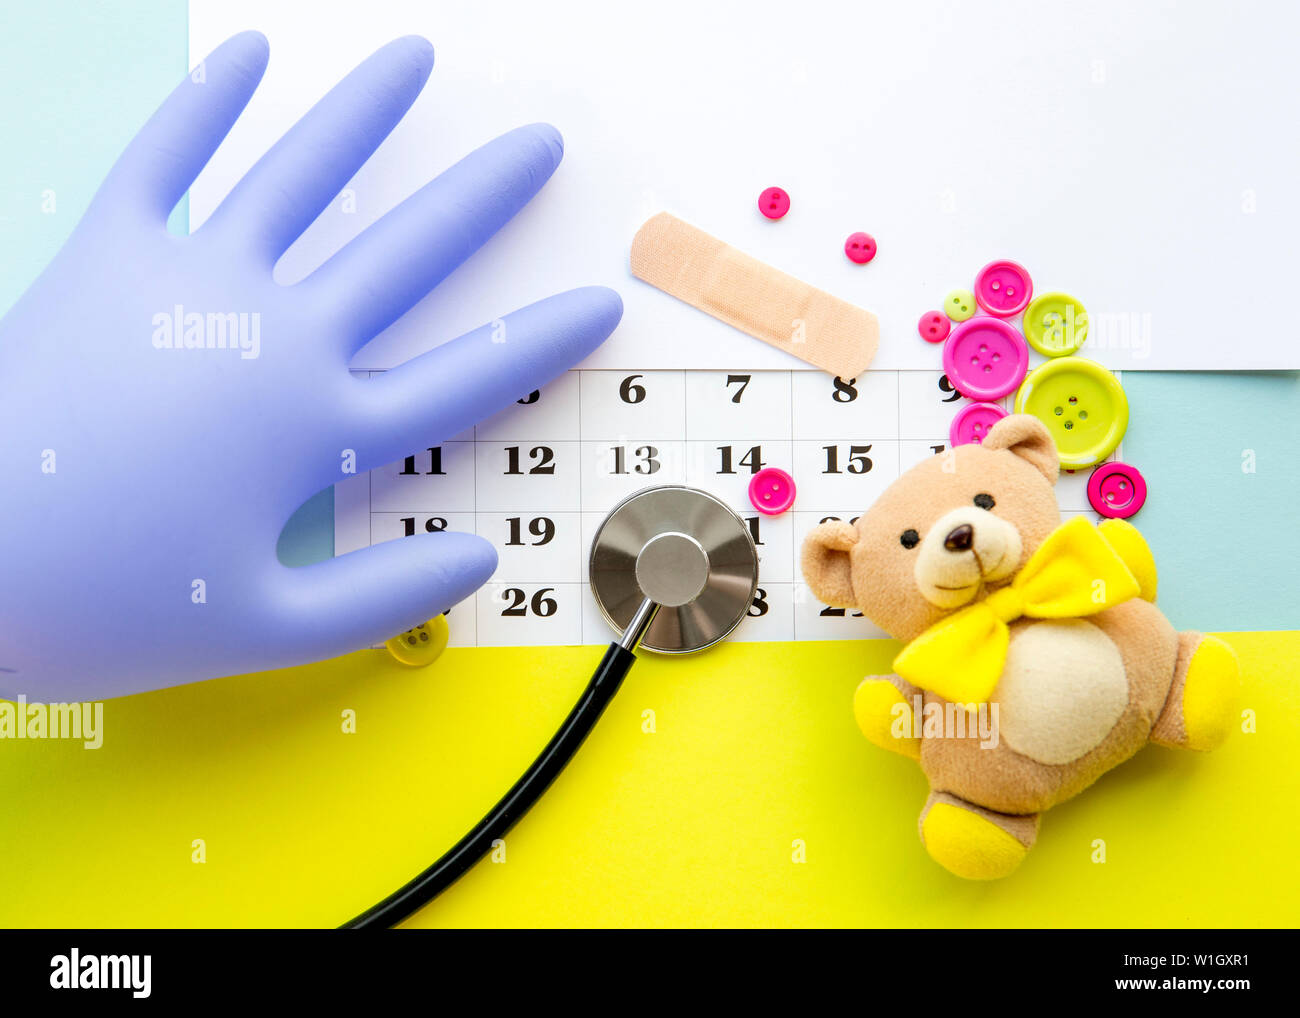 Kinder- arzt Termin Anzahl Konzept. Kalender mit Zahlen, Arzt, Kinder Spielzeug, Rosa und grüne Tasten. Flach. Stockfoto